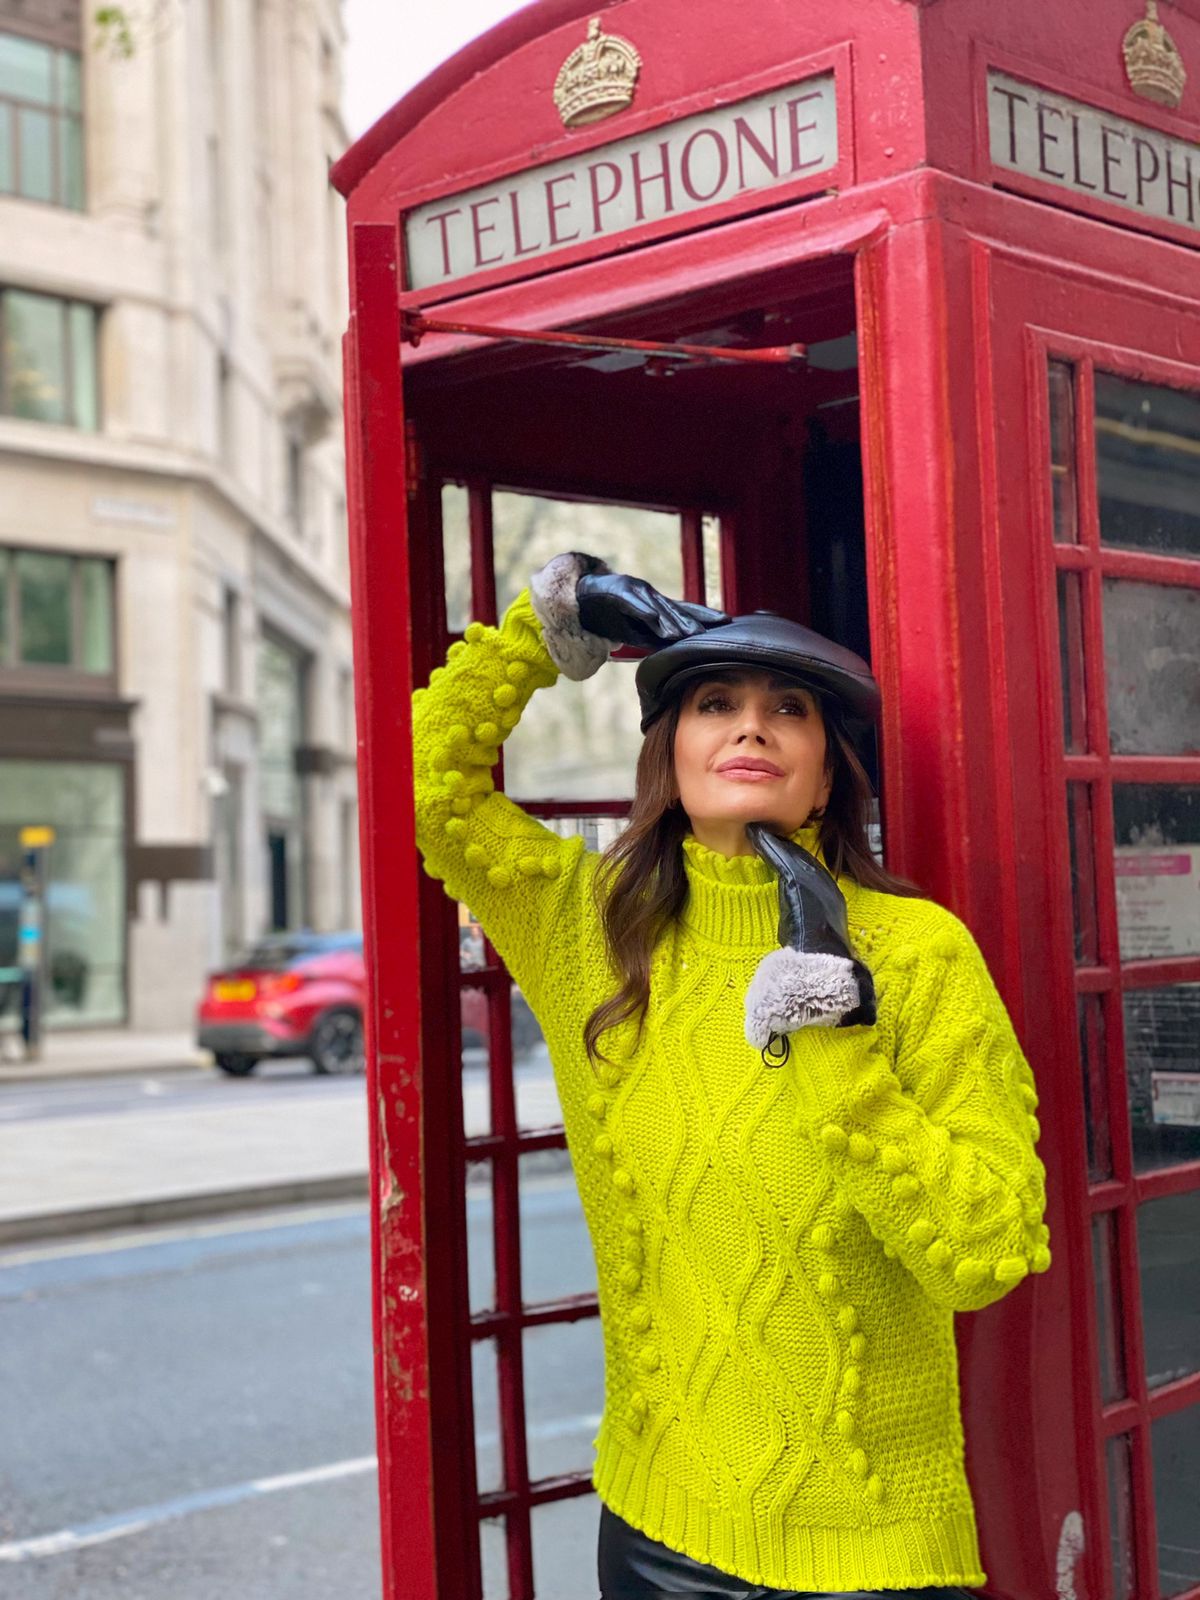 Claudia Métne viaja para Londres para realizar sua famosa Fashion Trip